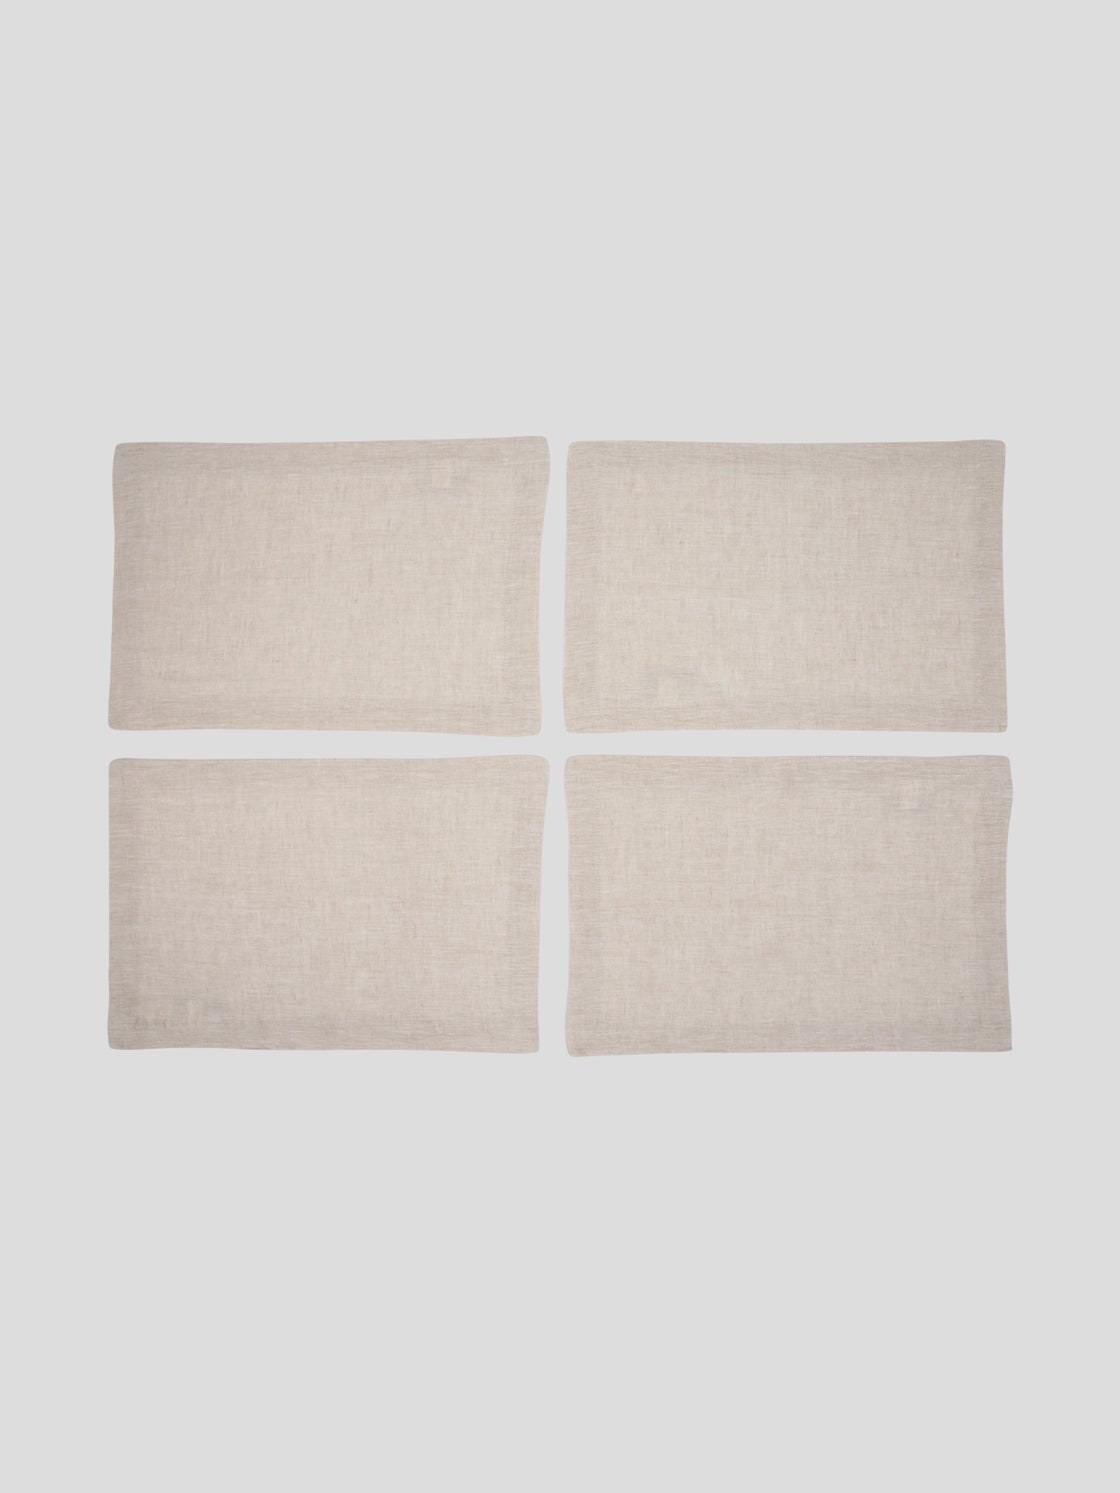 Swiss Dot Linen Placemats, Natural, Set of 4, 14 X 19 inch